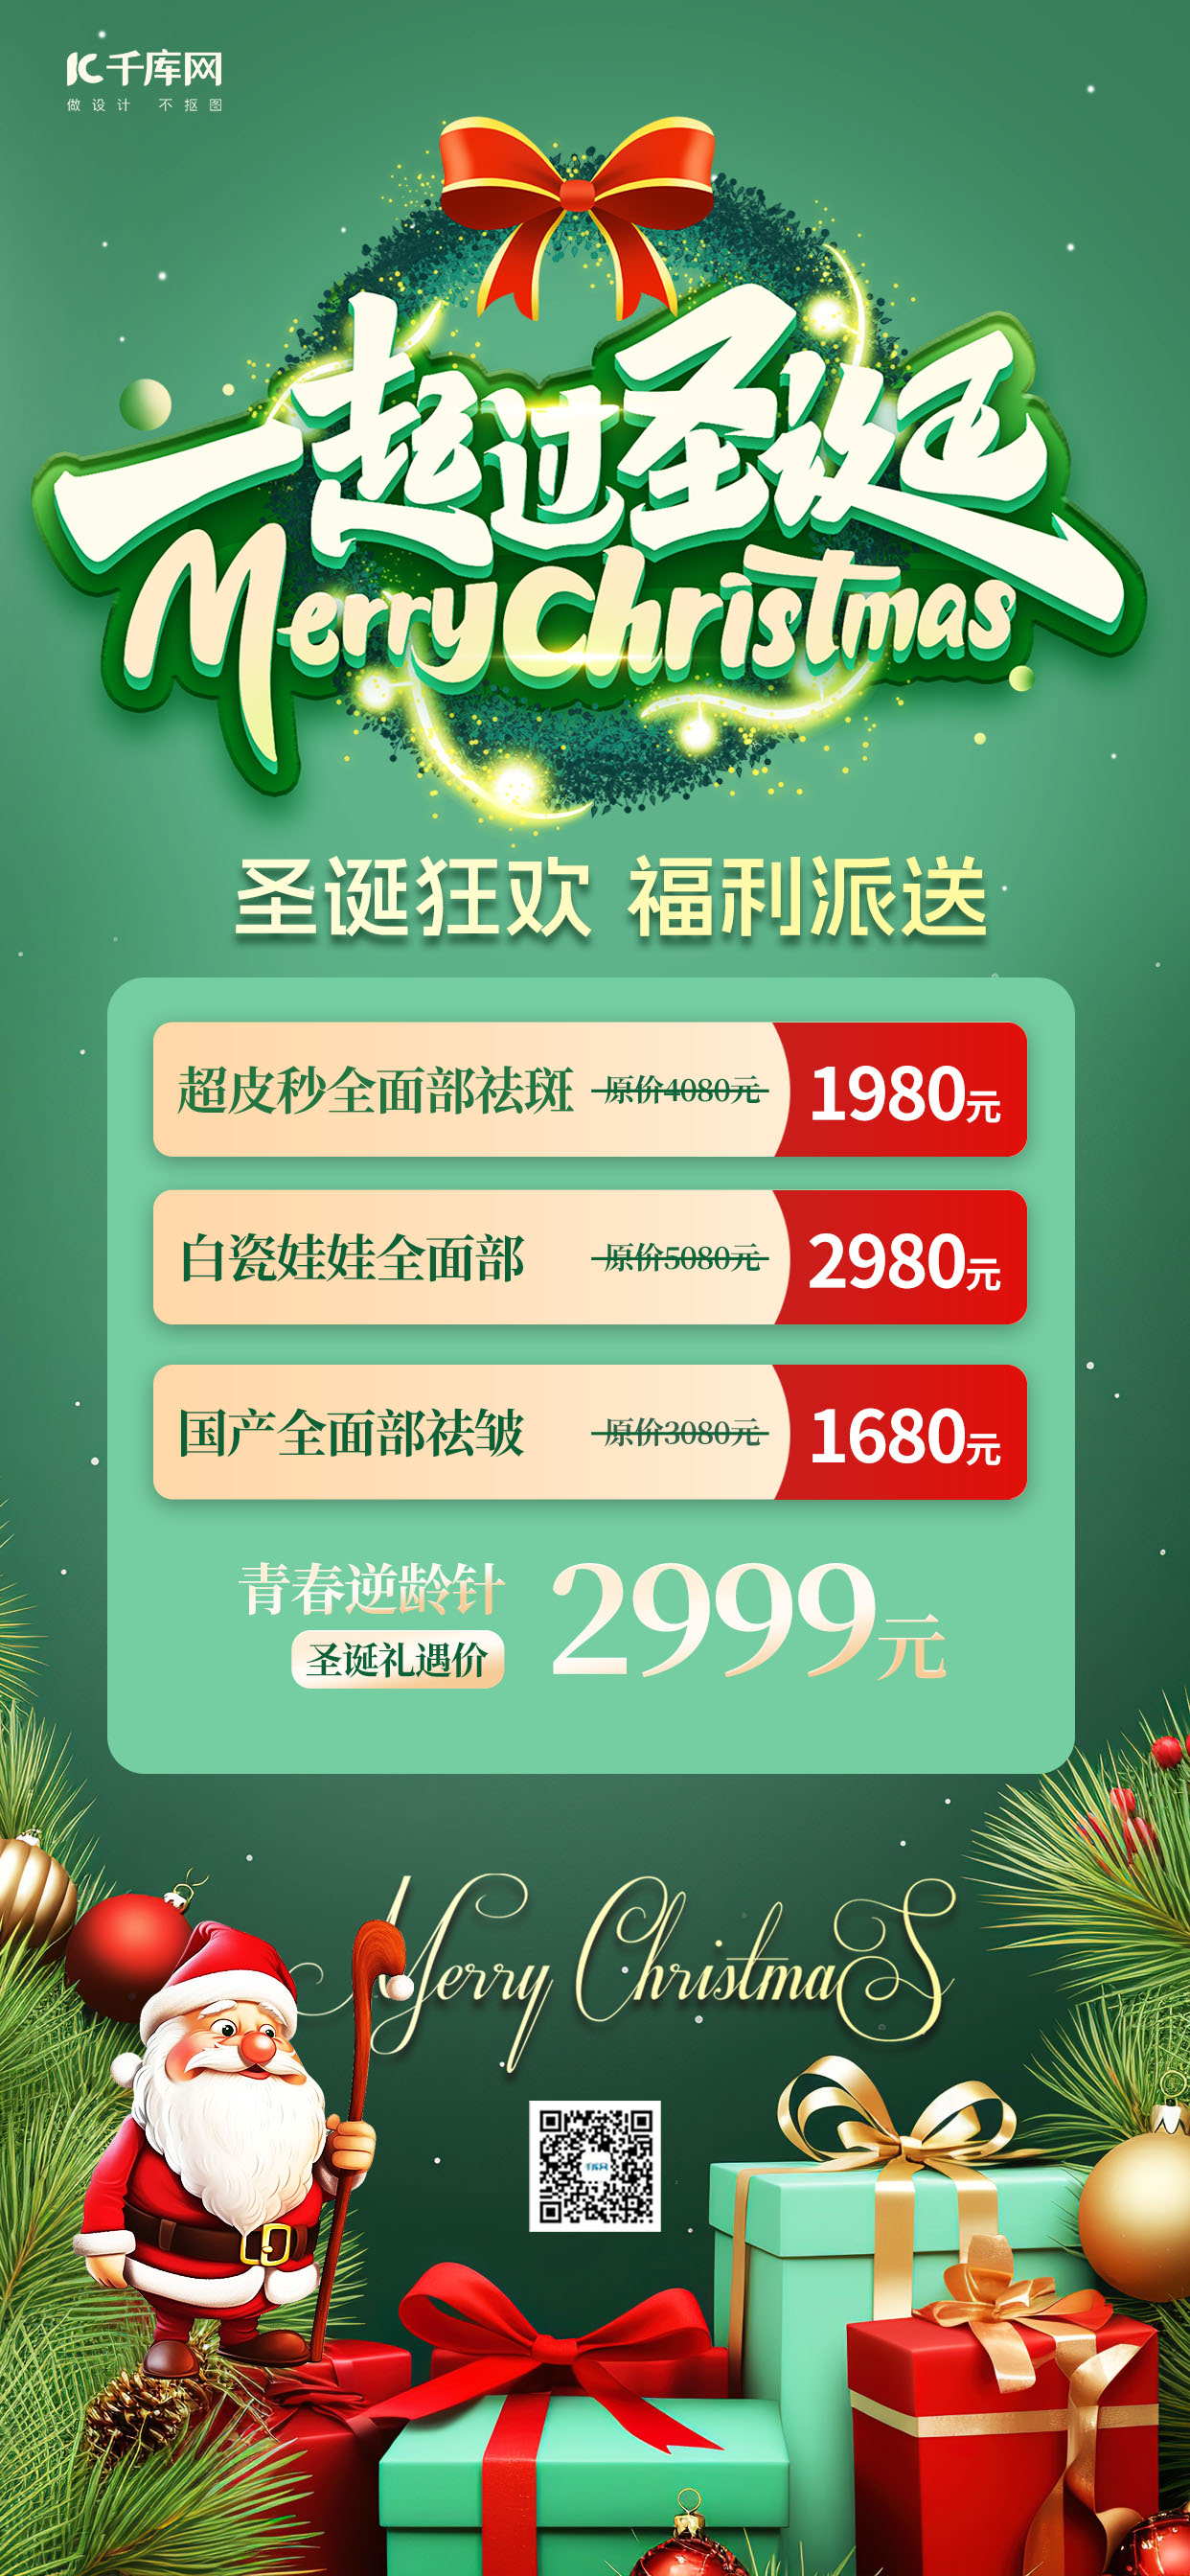 圣诞节狂欢礼盒圣诞老人绿色简约时尚手机海报图片